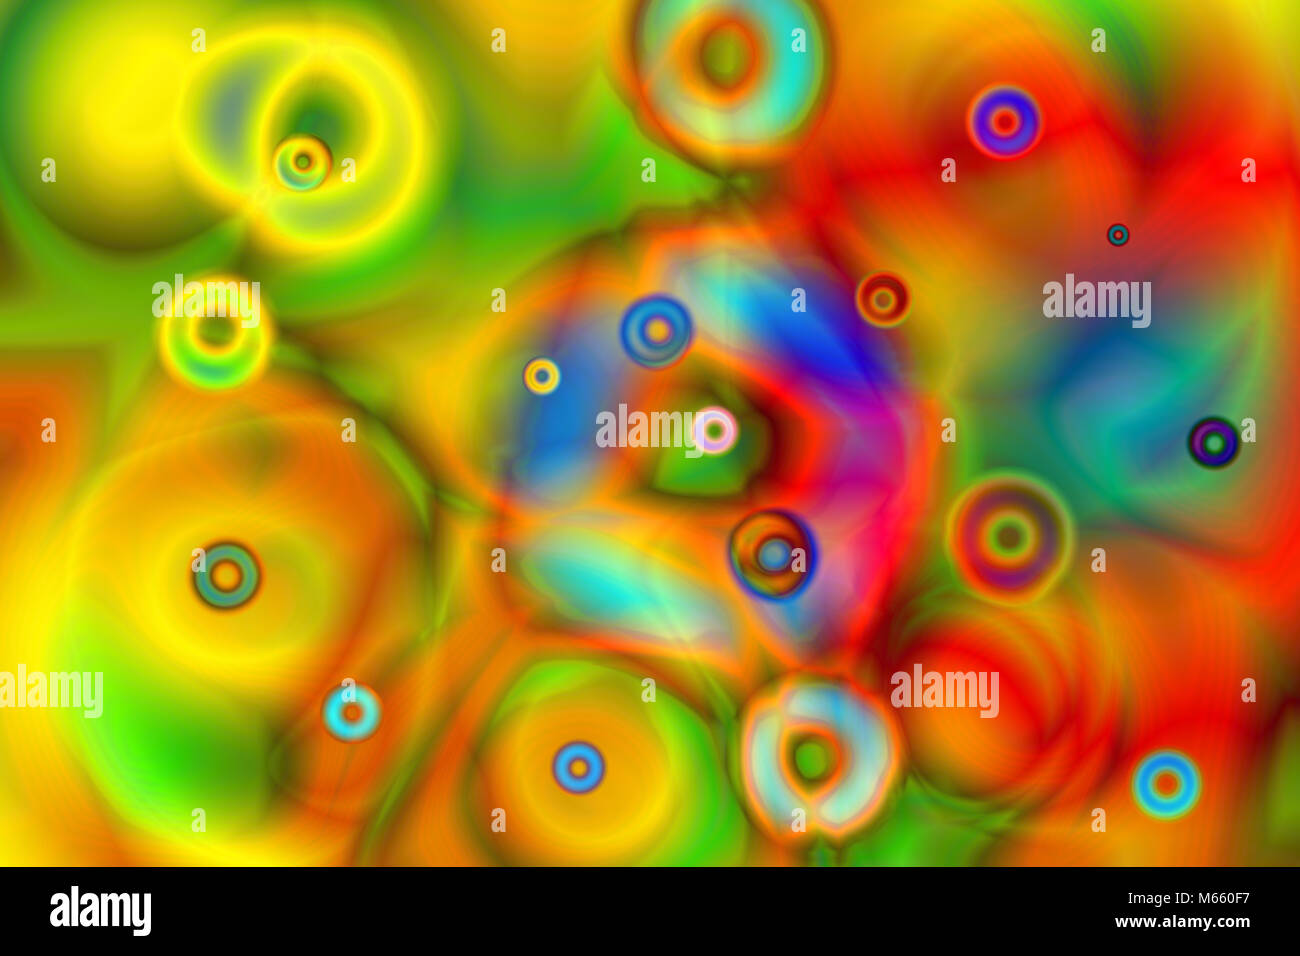 Bunte Computer generierte Zusammenfassung Hintergrund mit verschiedenen Farben Stockfoto